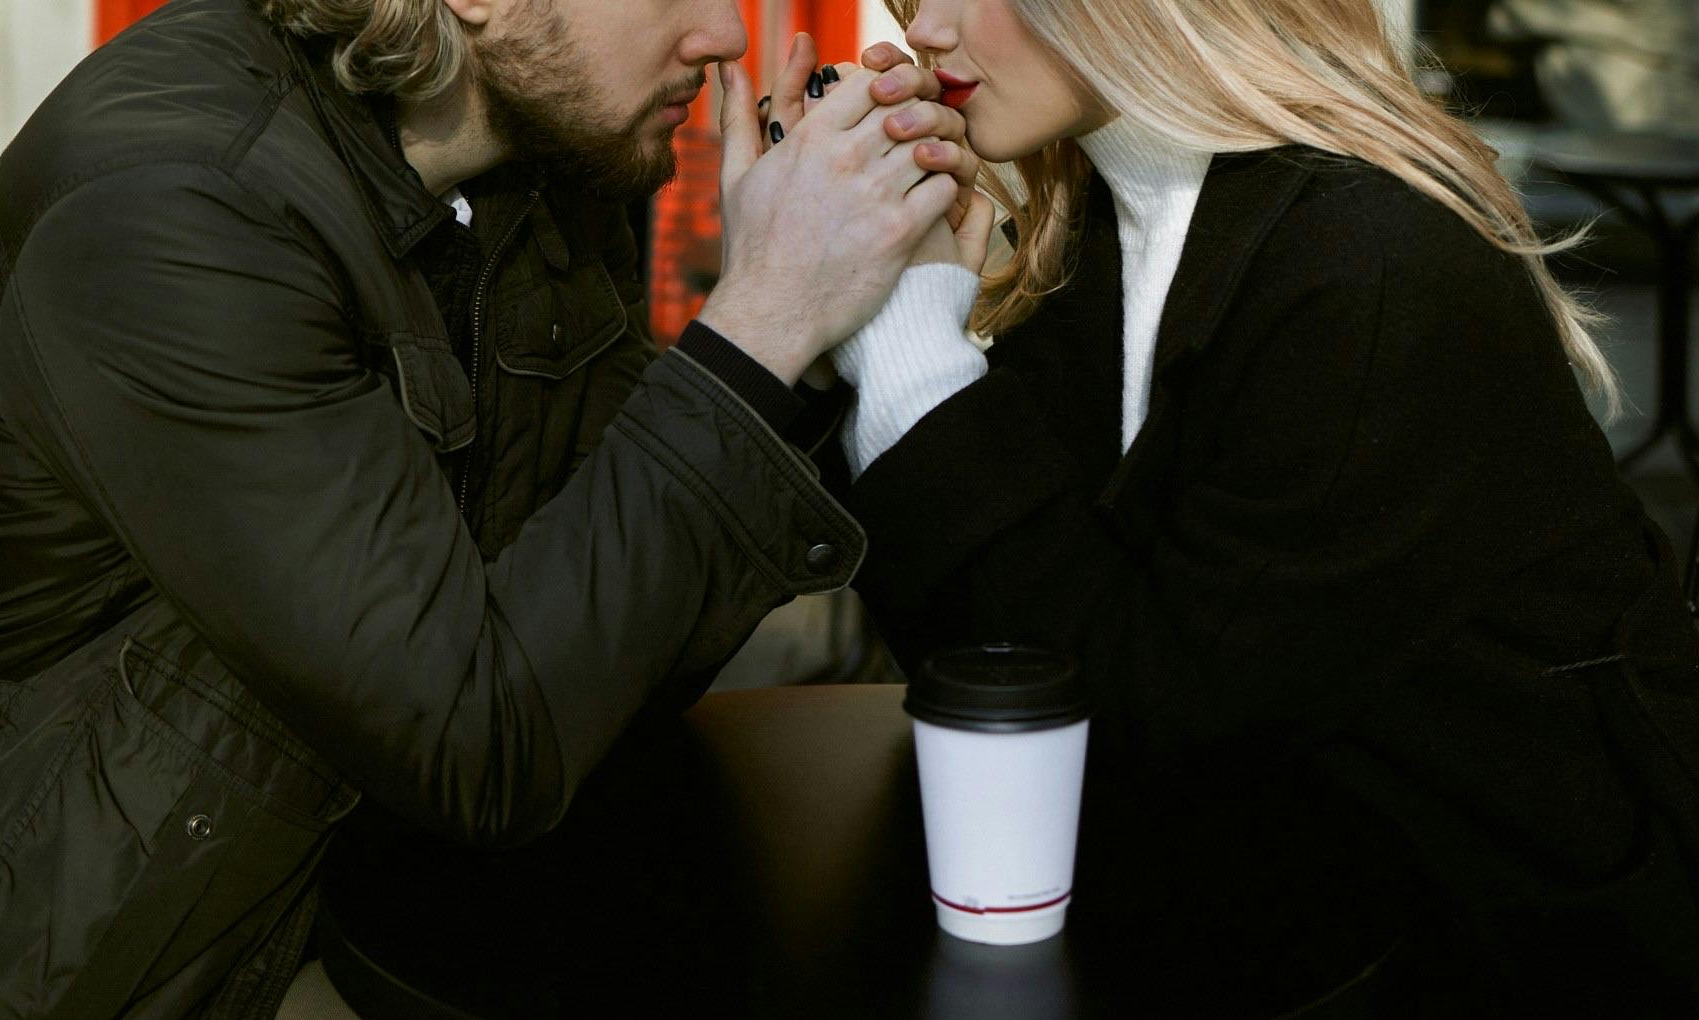 Sophia y Jason hablando intensamente en un acogedor café | Fuente: Pexels